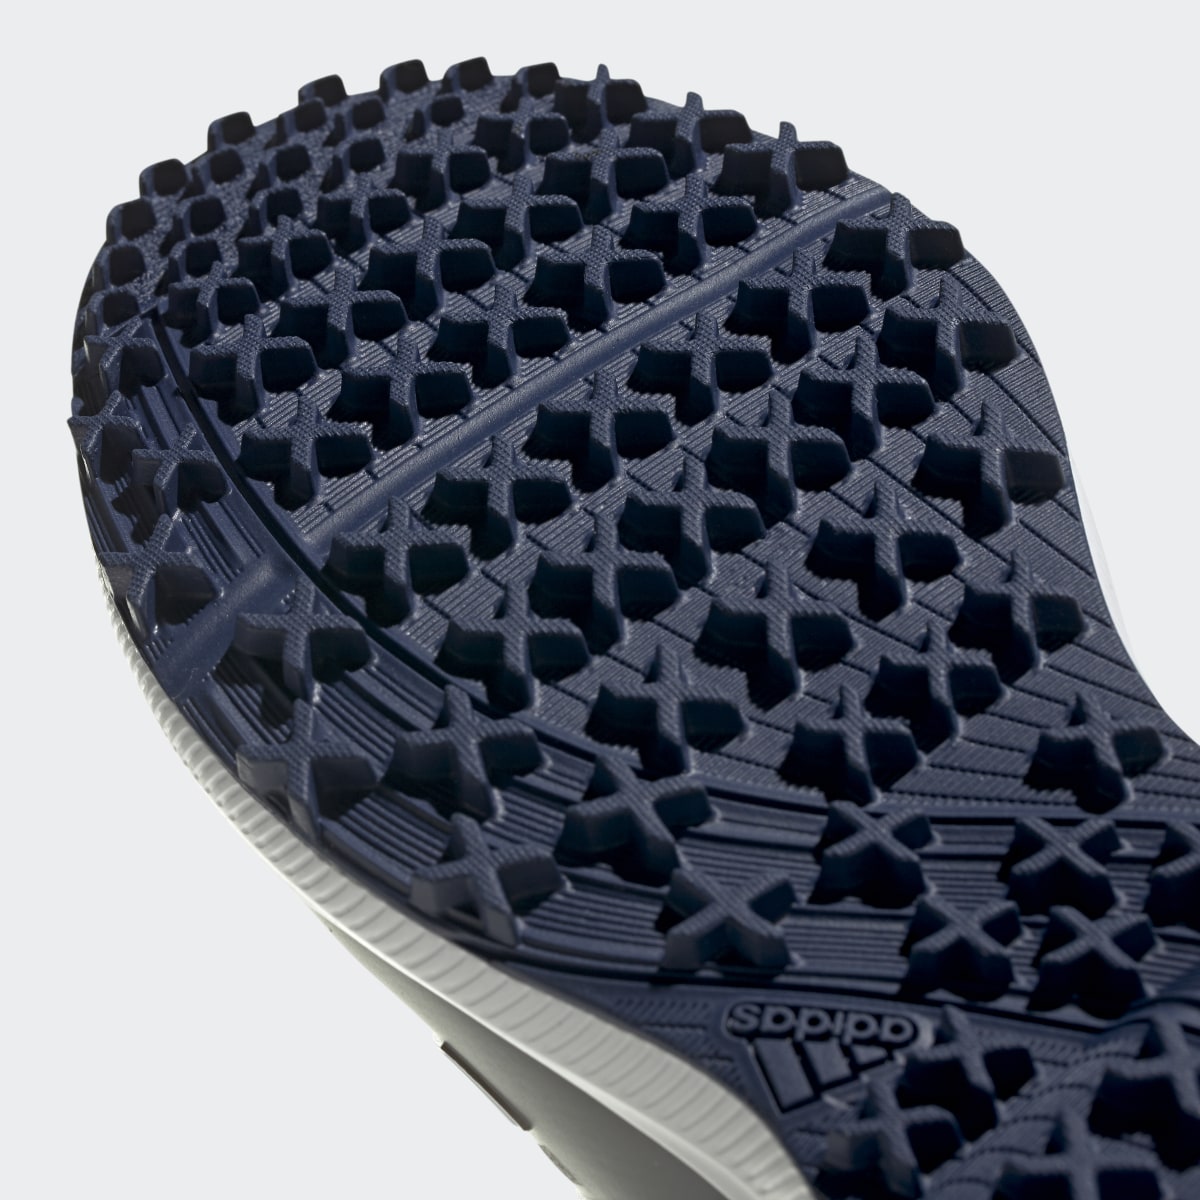 Adidas Tech Response SL Spikeless Golf Shoes. 10